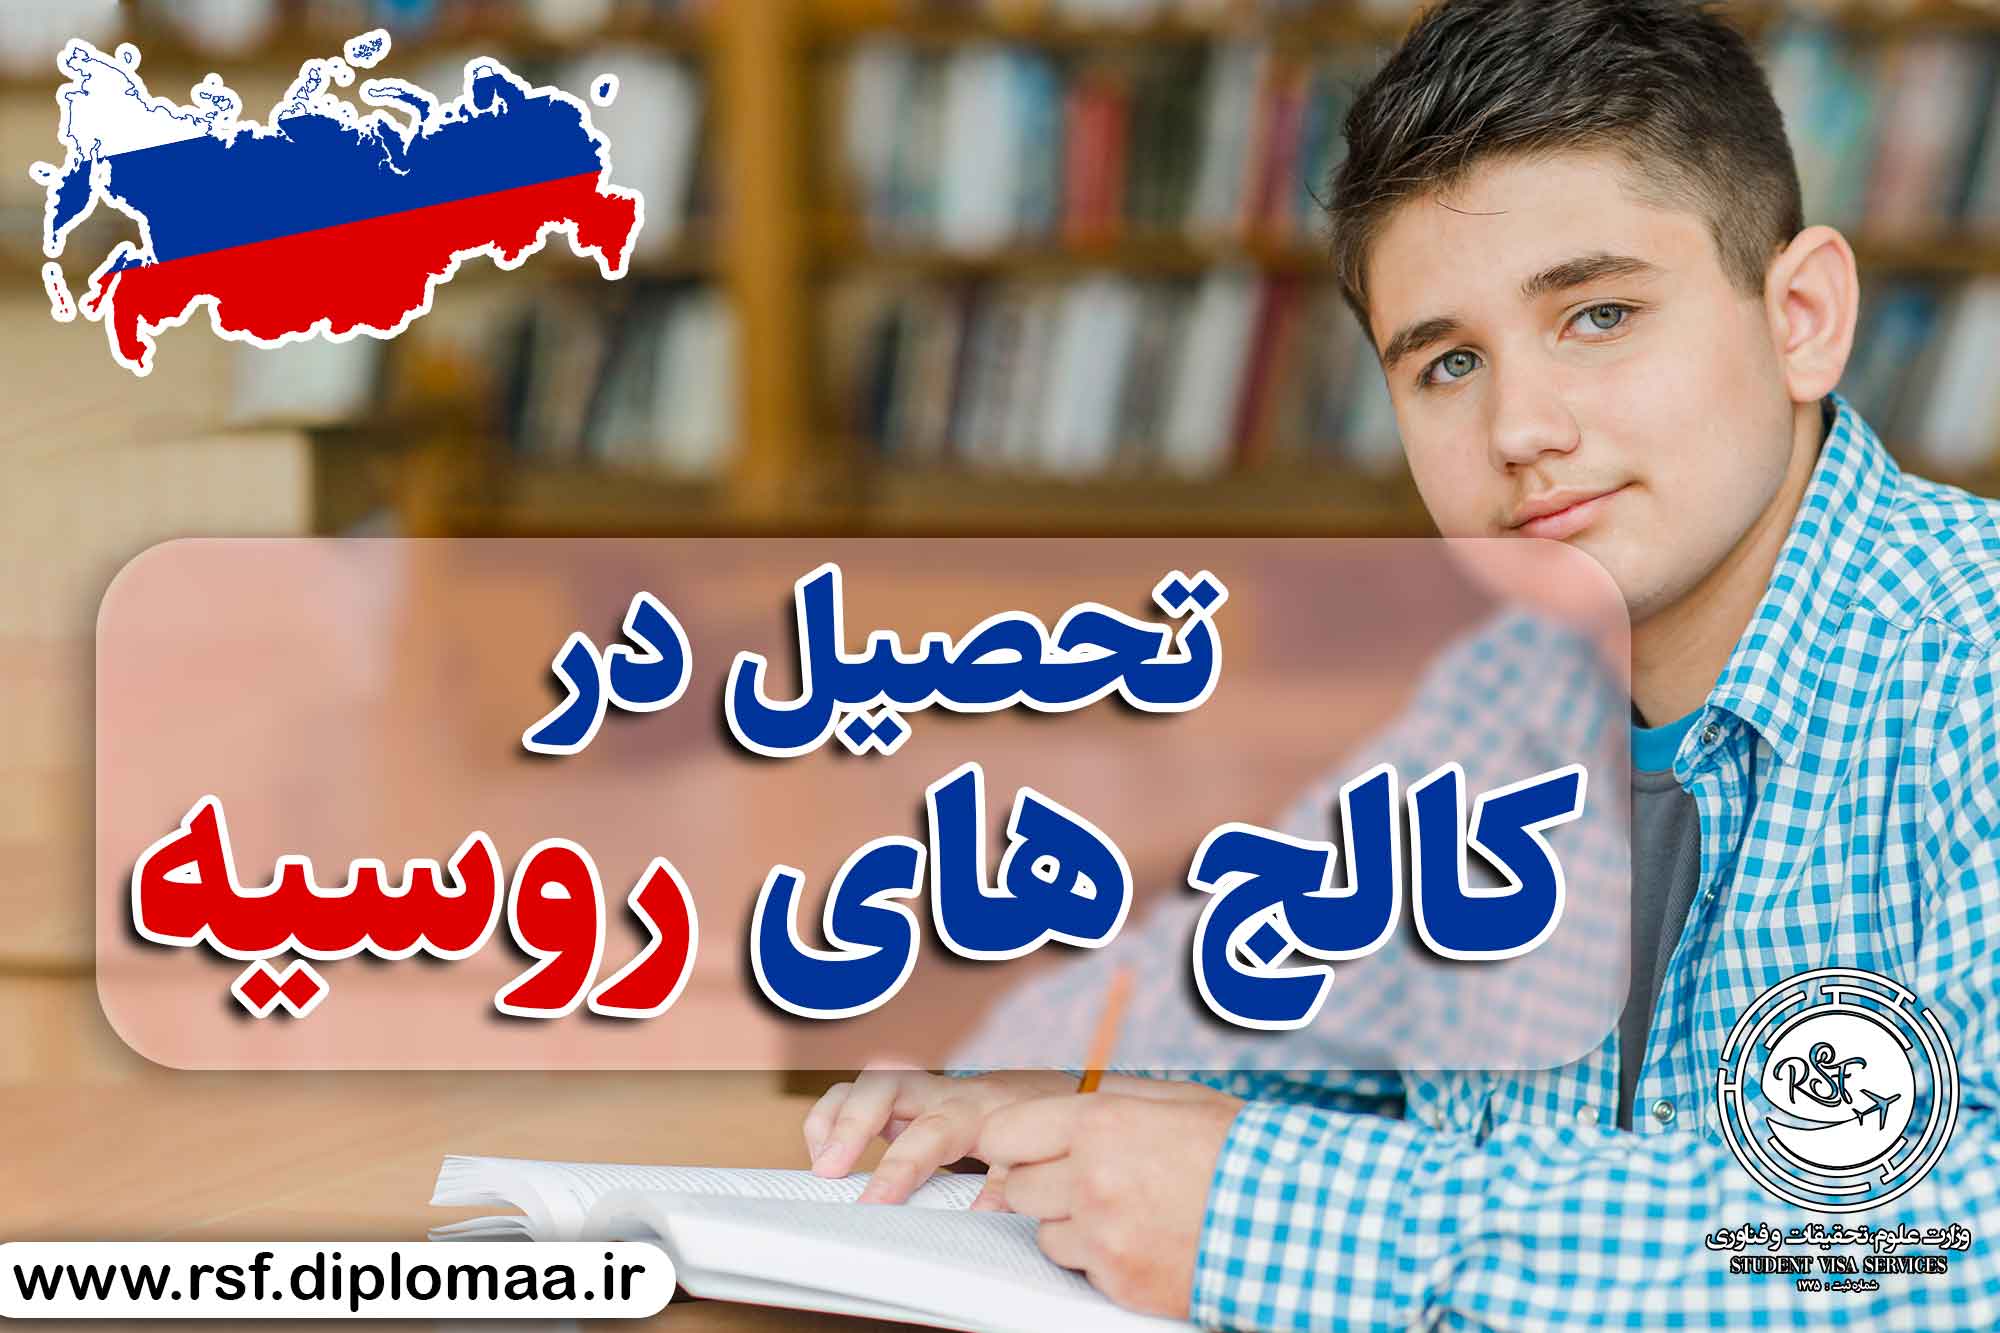 تحصیل در کالج های روسیه